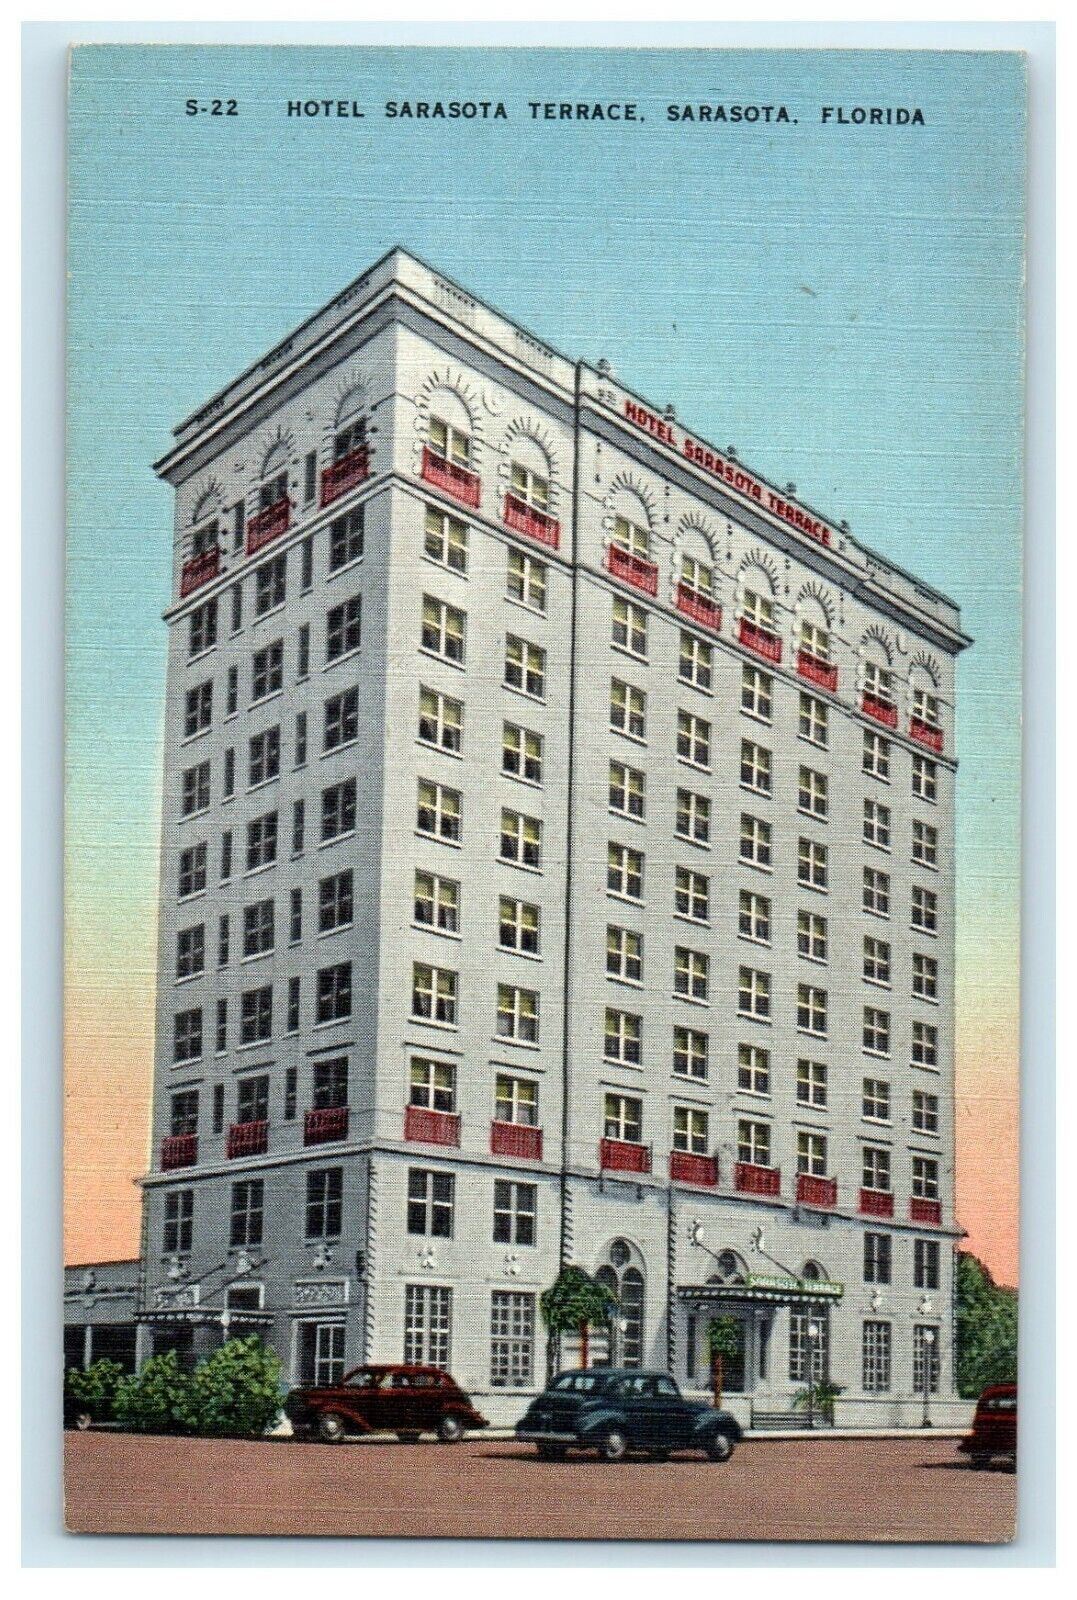 Hotel Sarasota Terrace Building Overlooking Sarasota Bay Florida FL Postcard